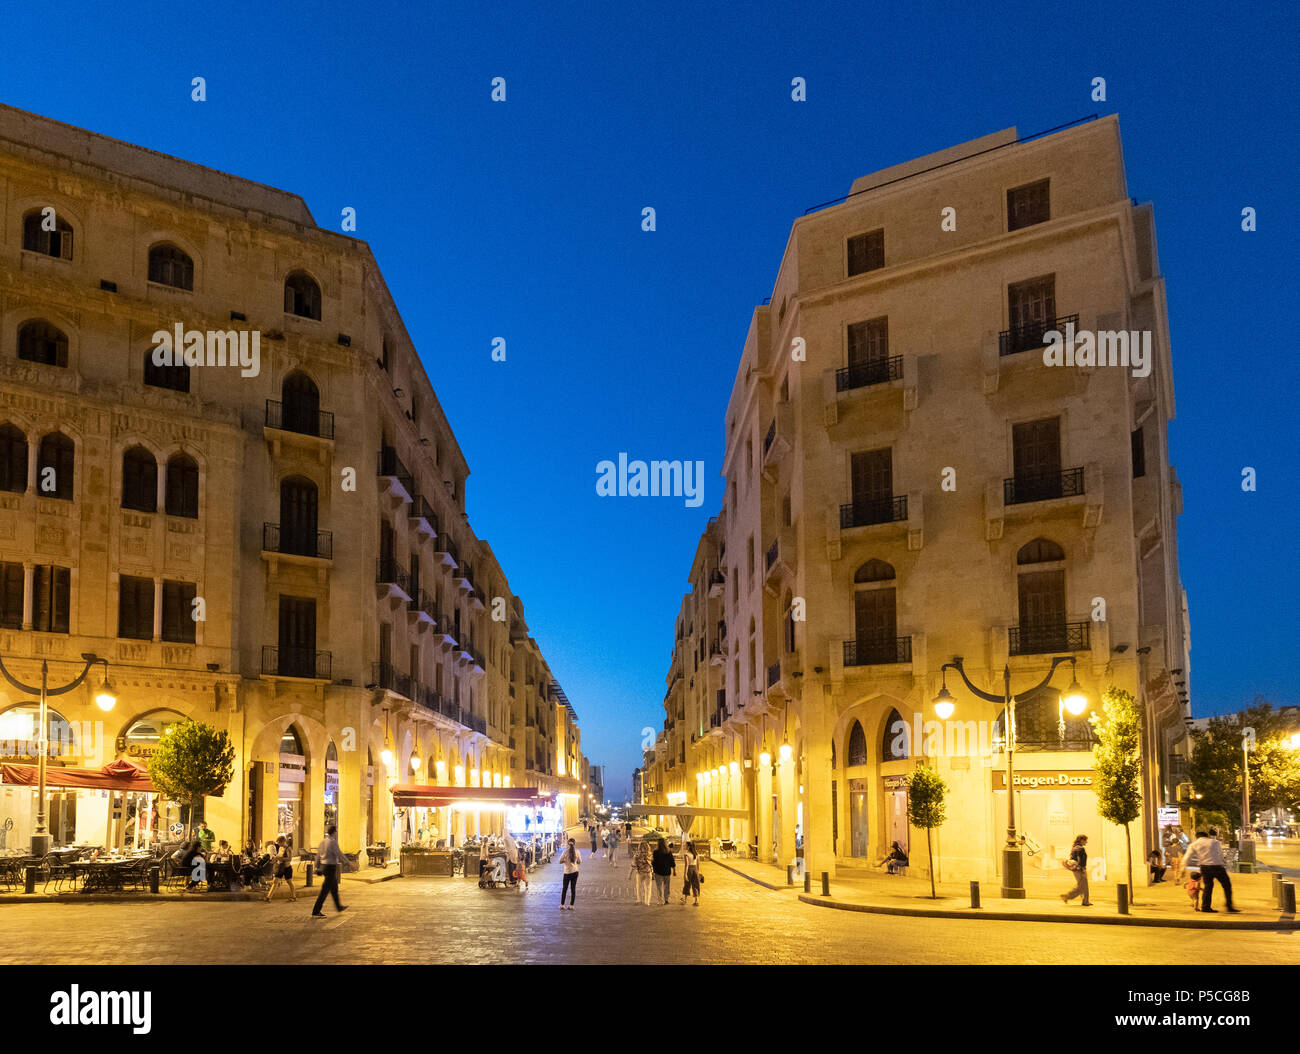 Vista notturna di vecchio stile coloniale edifici restaurati in Place d'Etoile centro cittadino di Beirut, Libano Foto Stock